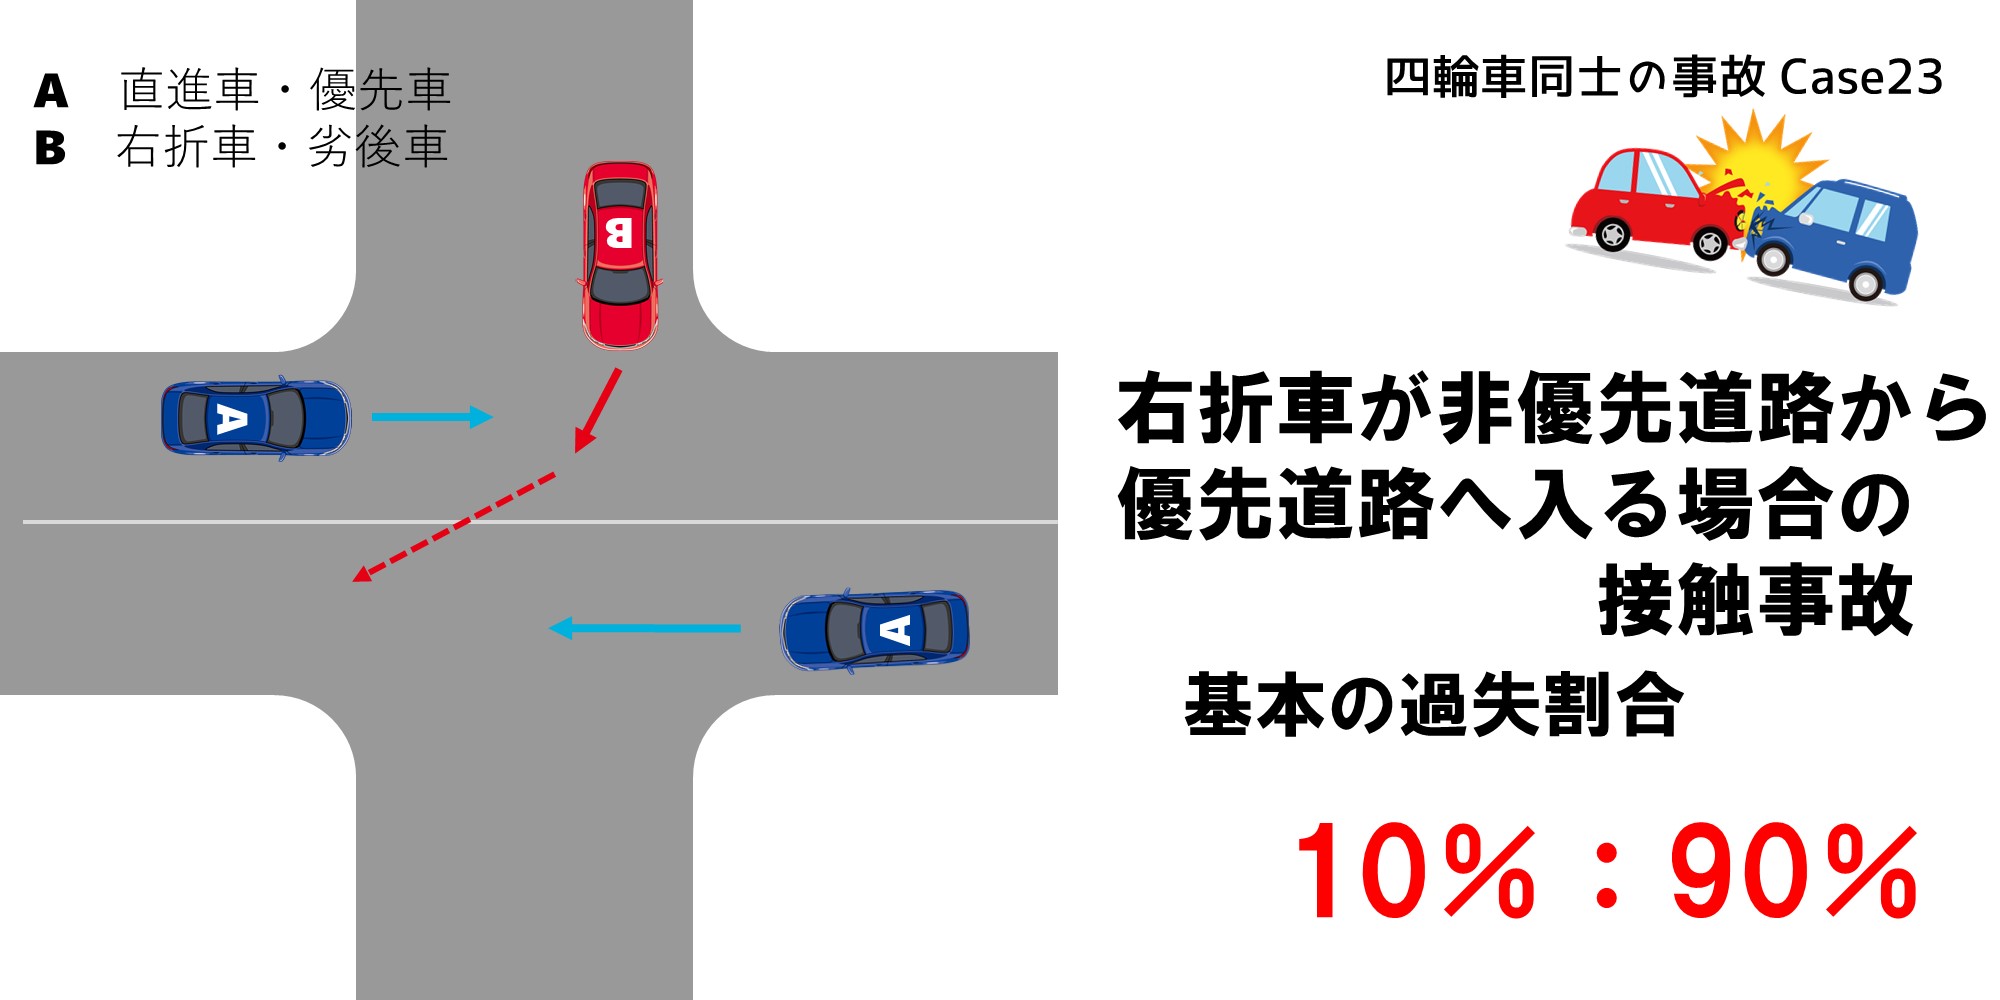 右折車が非優先道路から優先道路へ入る場合の過失割合